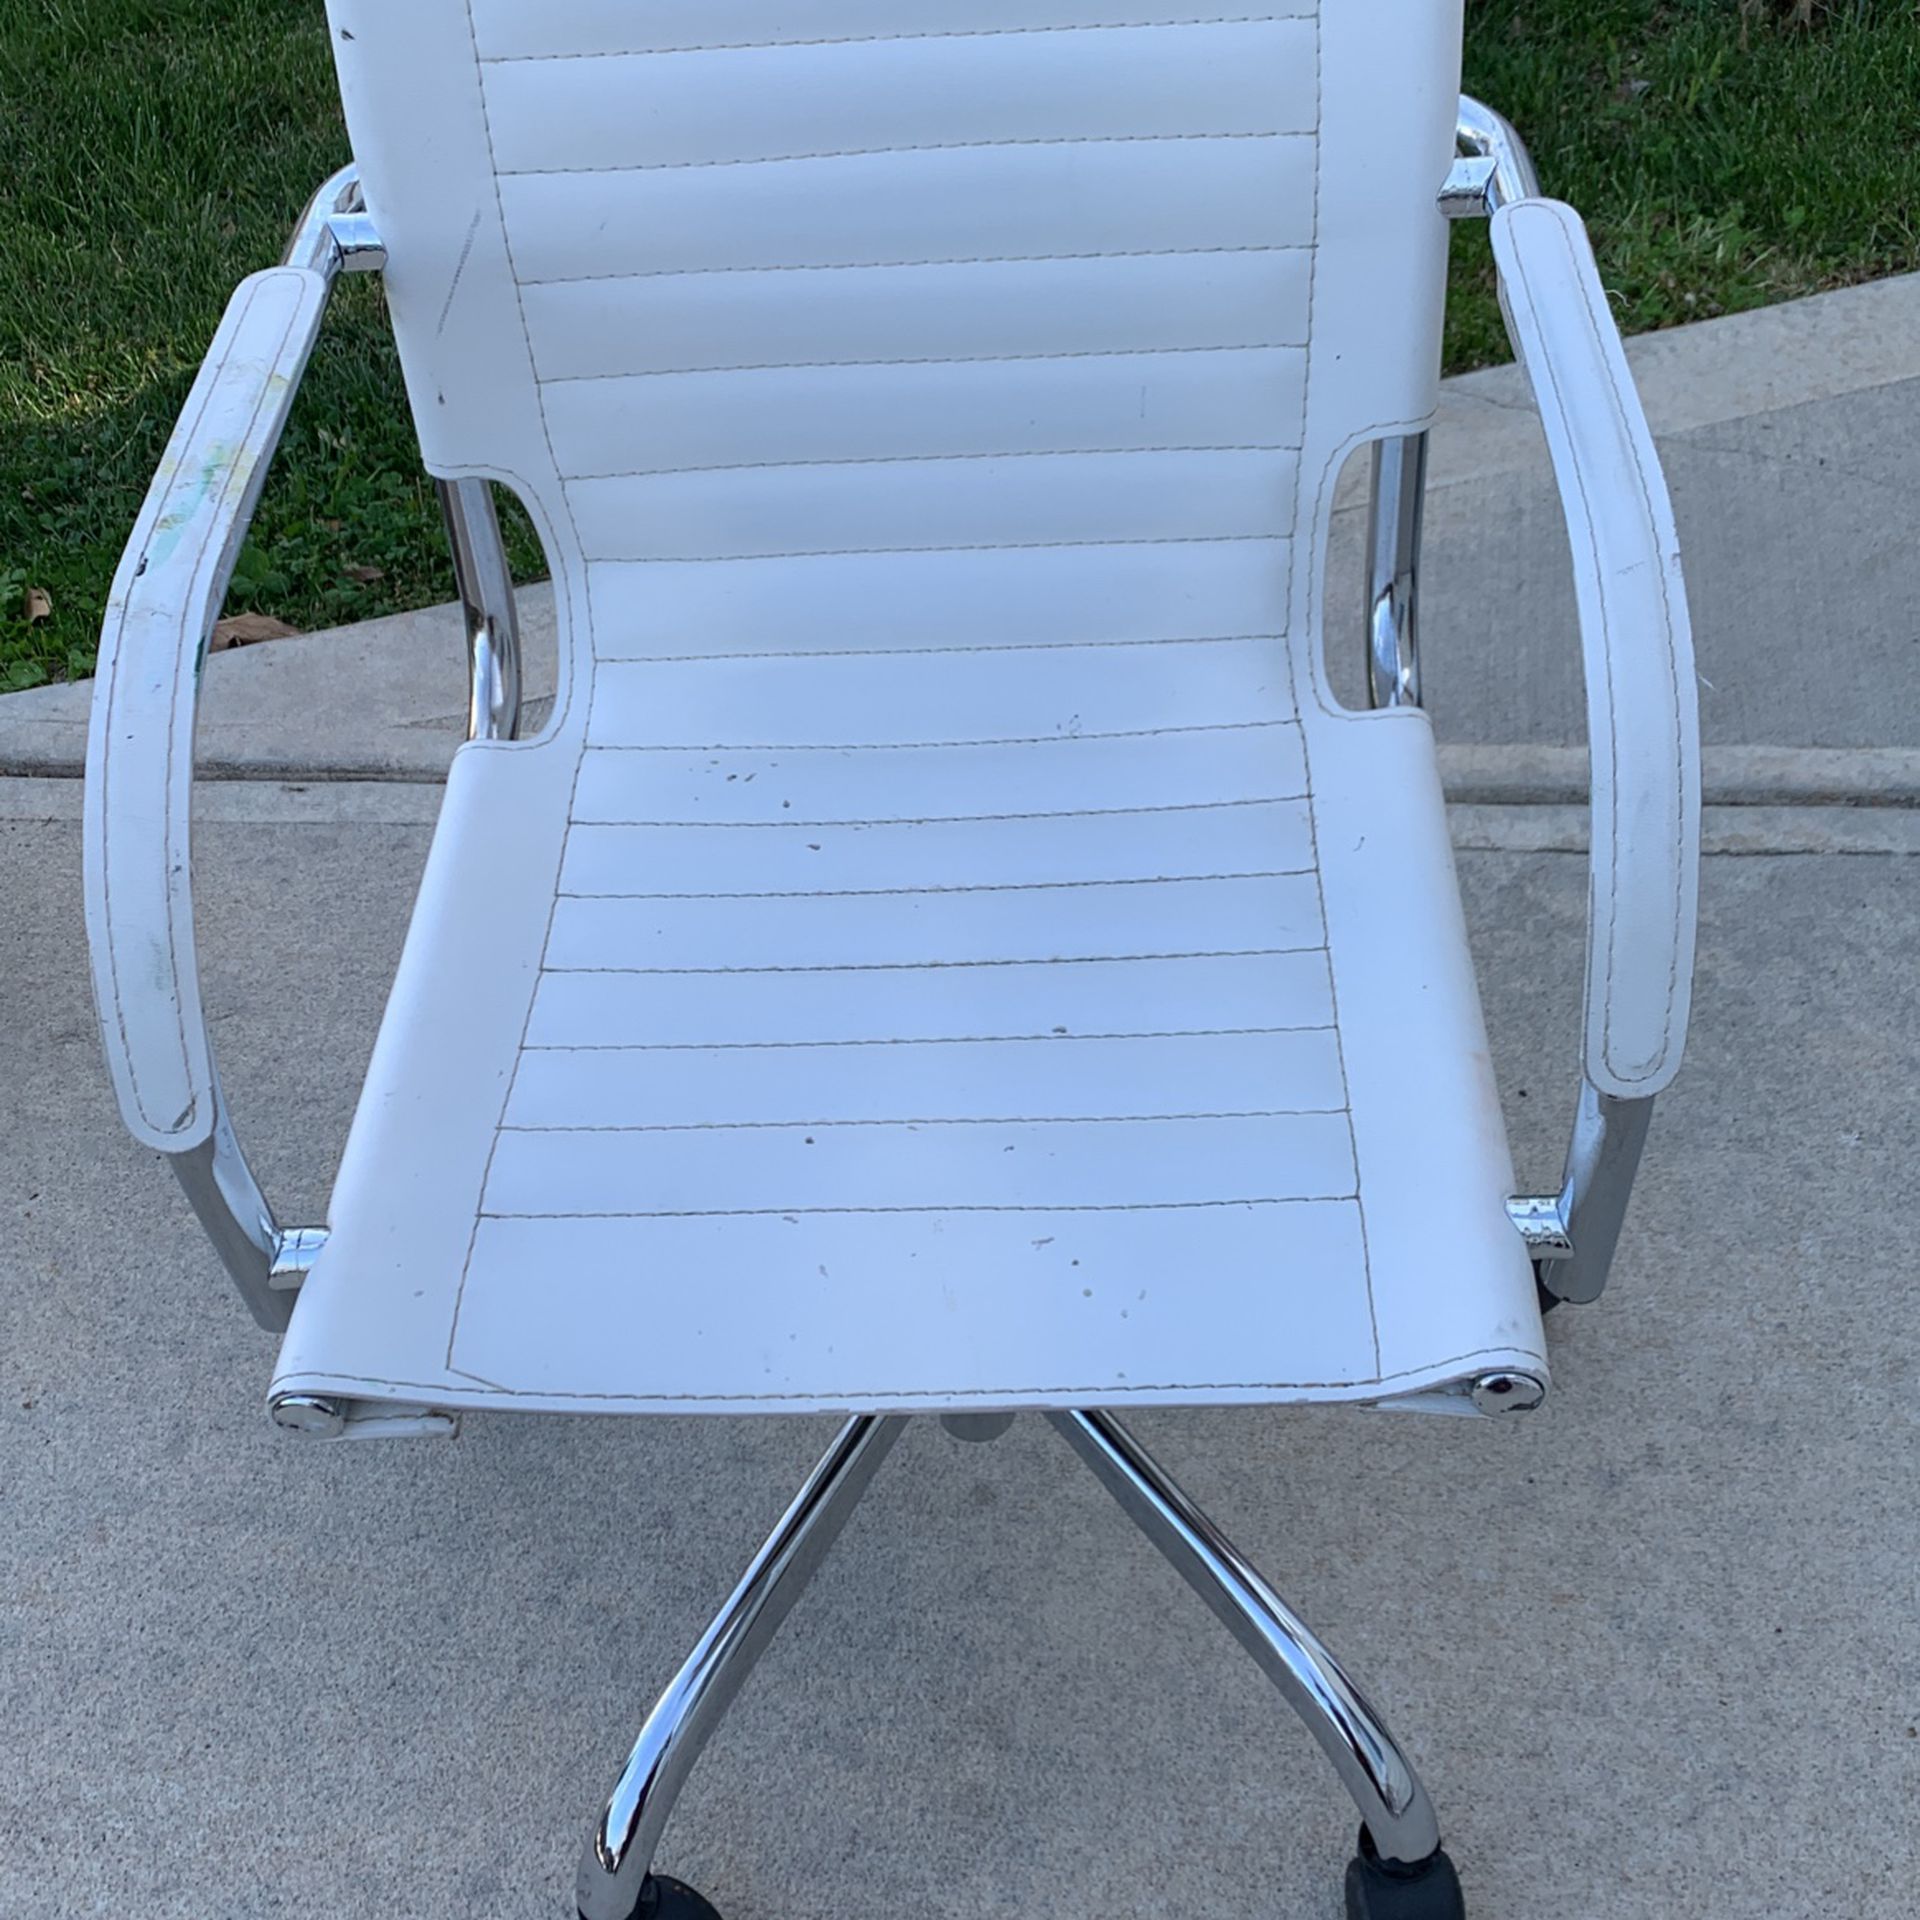 Chair$50